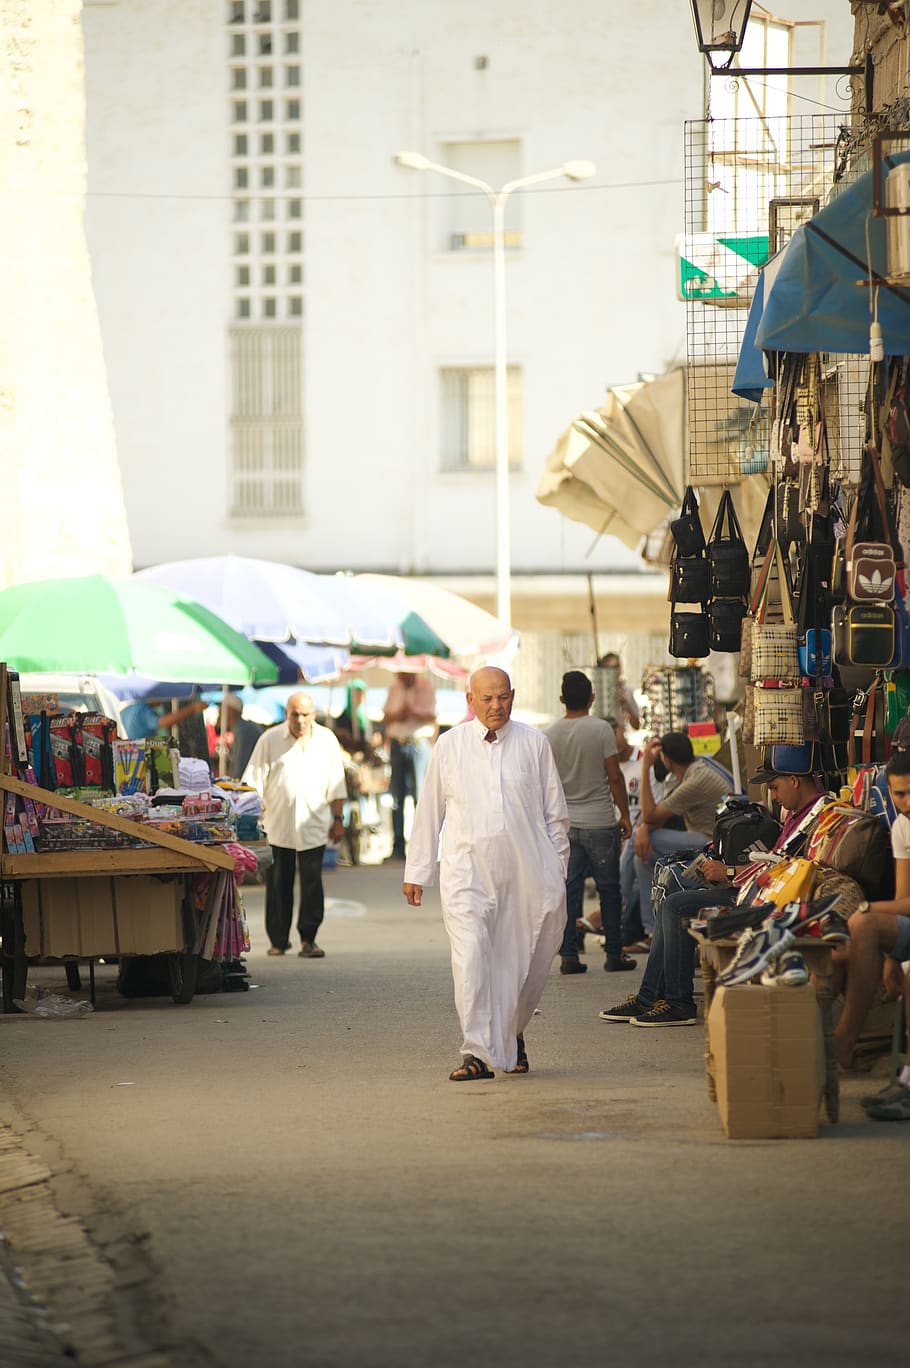 tunisia, pasar, pria, pergi, muslim, penjual, pembeli, tas, barang, tenda